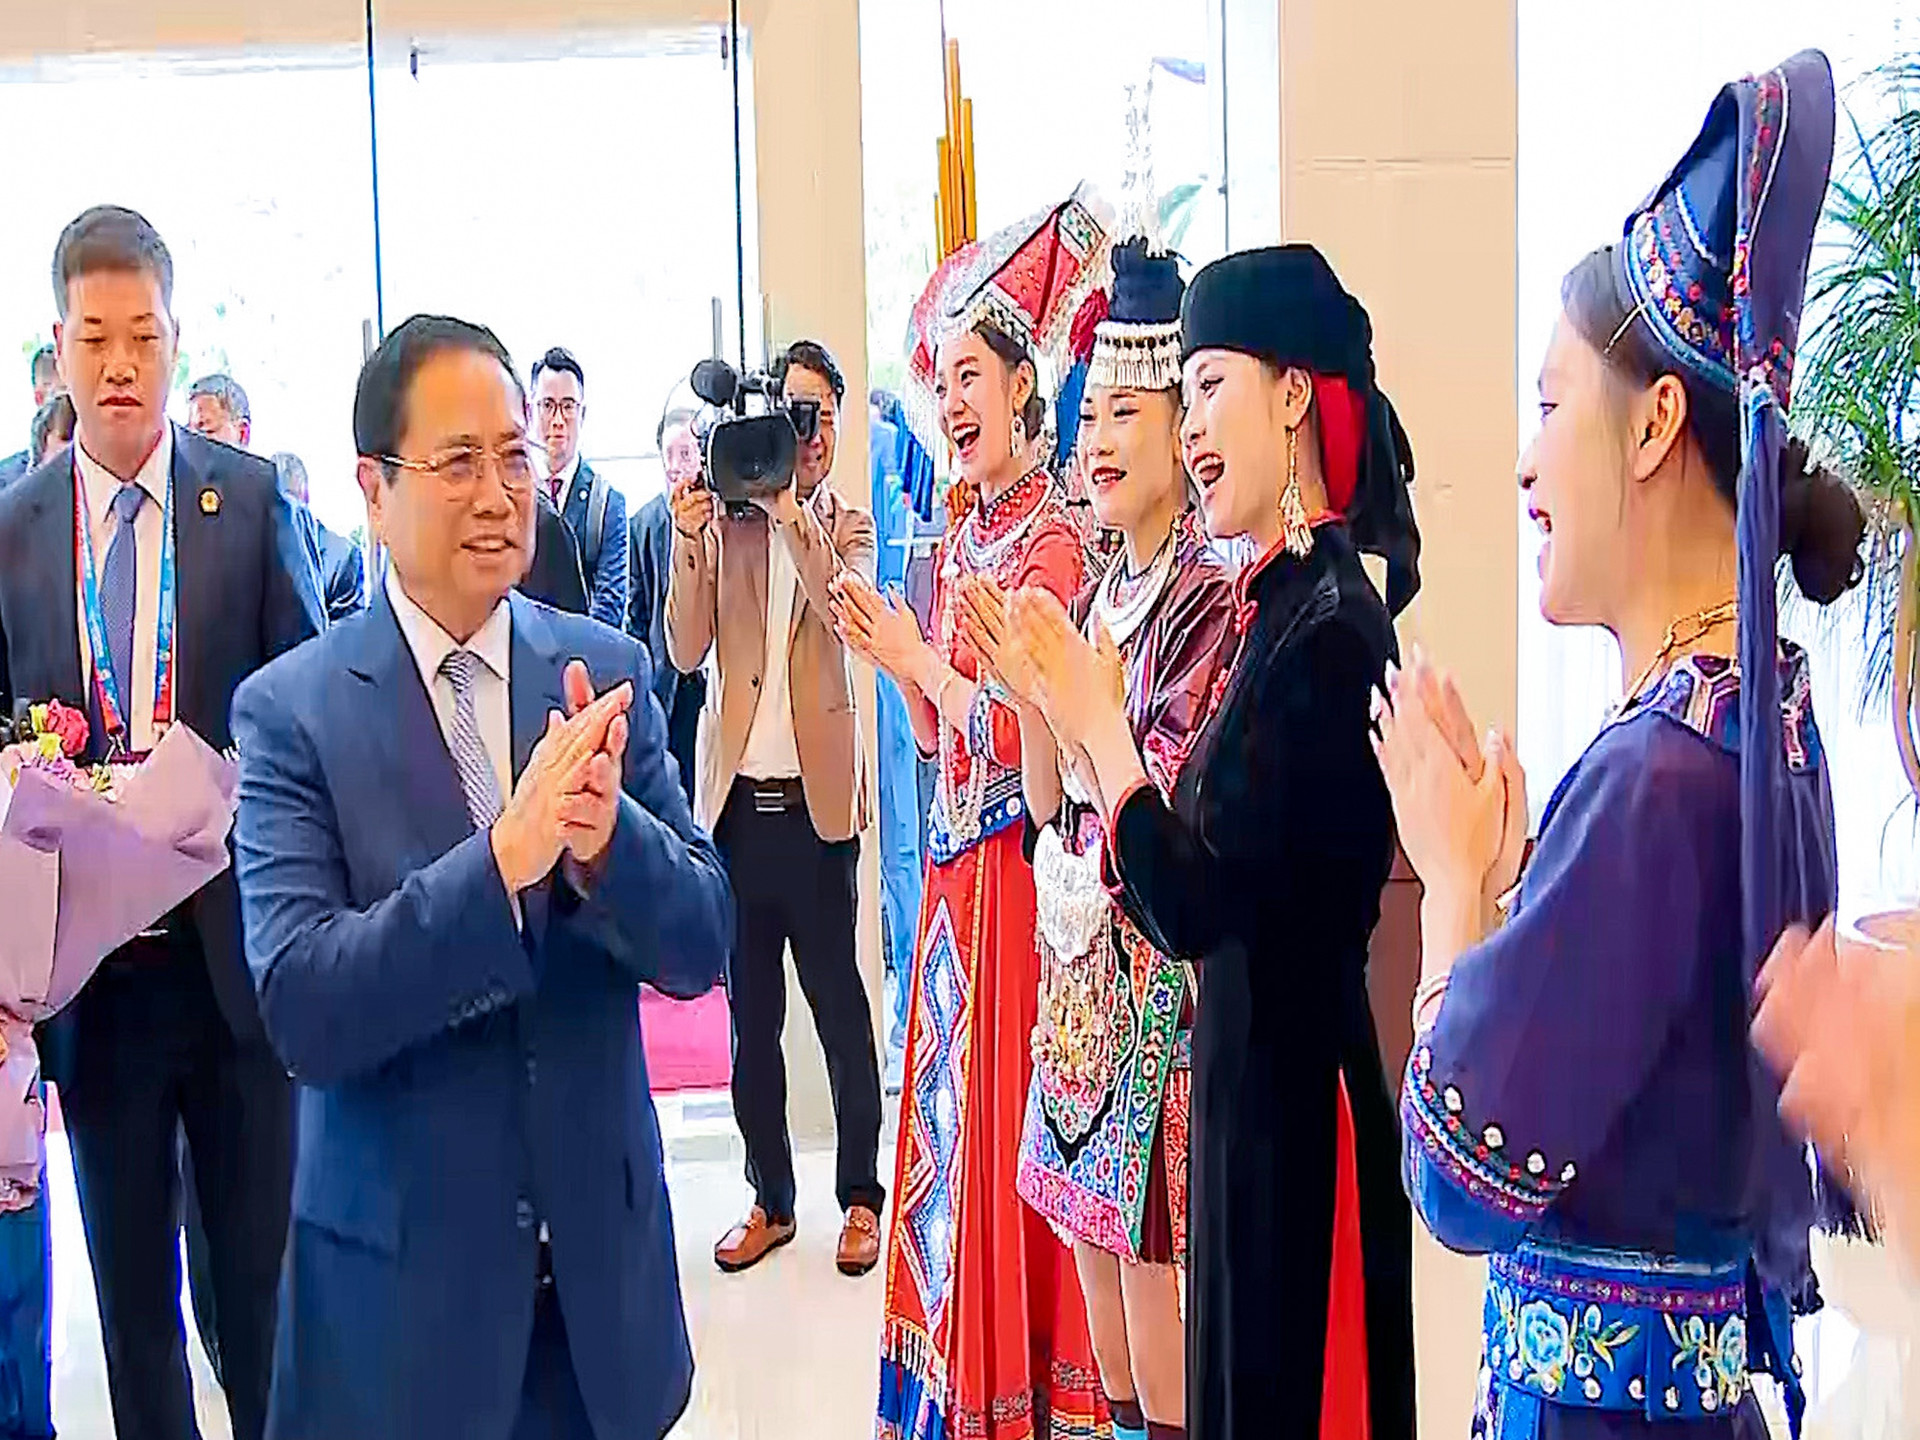 Chùm ảnh: Thủ tướng Phạm Minh Chính bắt đầu chuyến công tác tại Trung Quốc - Ảnh 6.